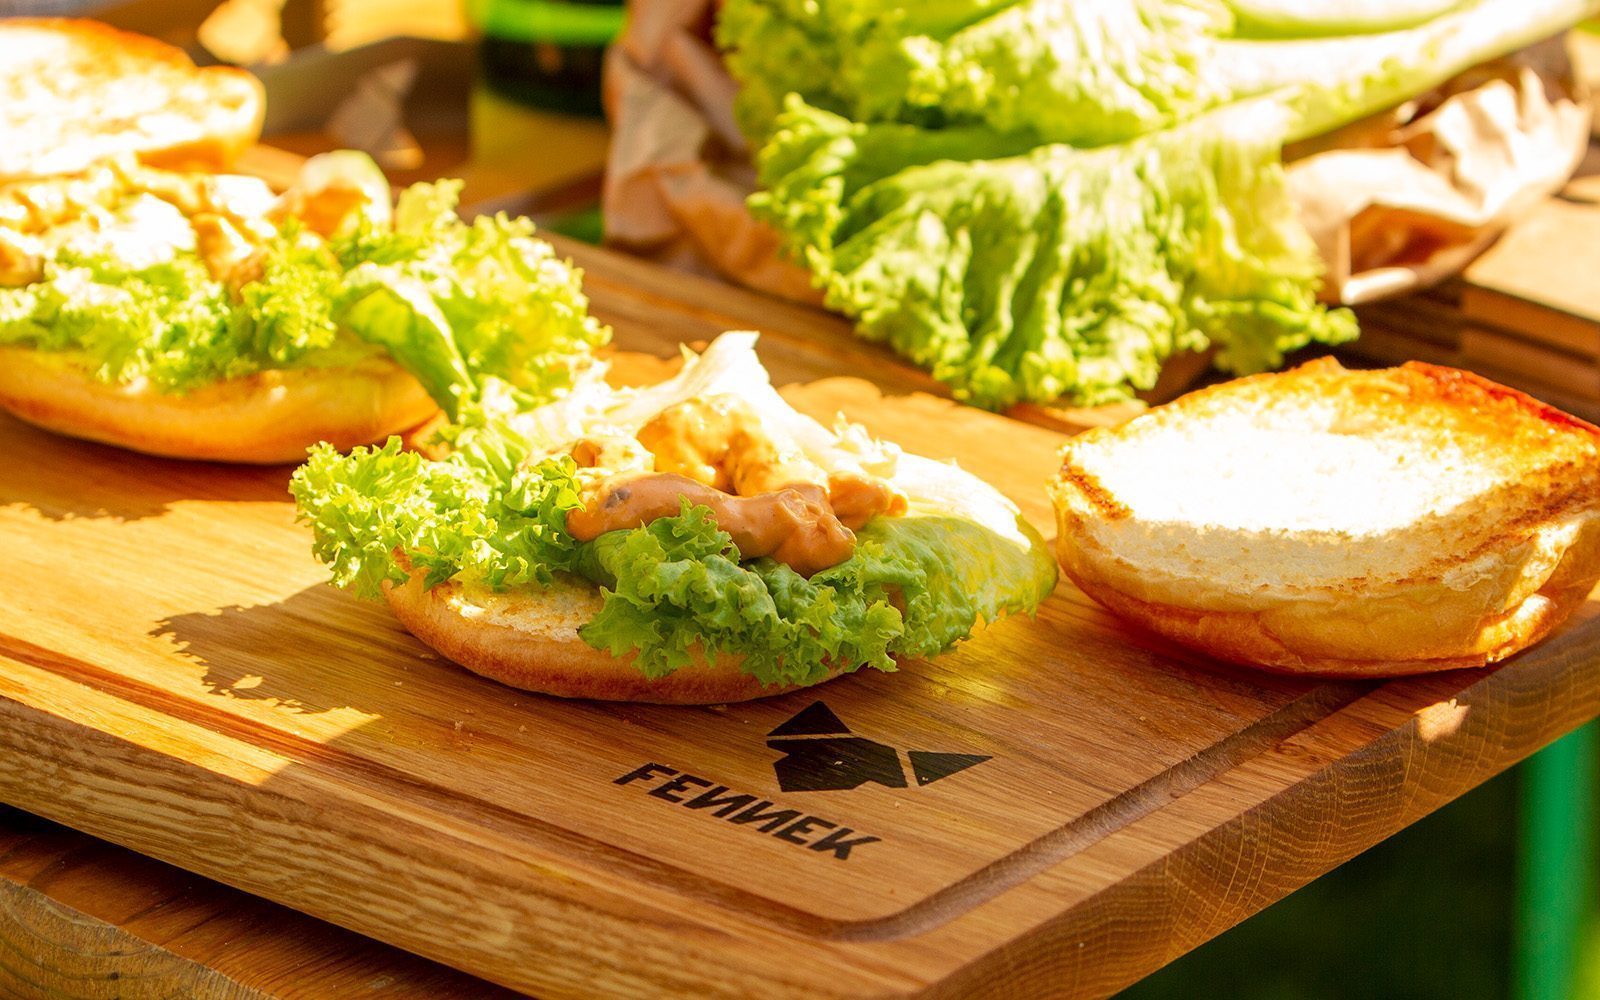 Brötchen für Hamburger mit Salatblättern und Sauce liegen auf einem Holz-Schneidebrett bei sonnigem Wetter.